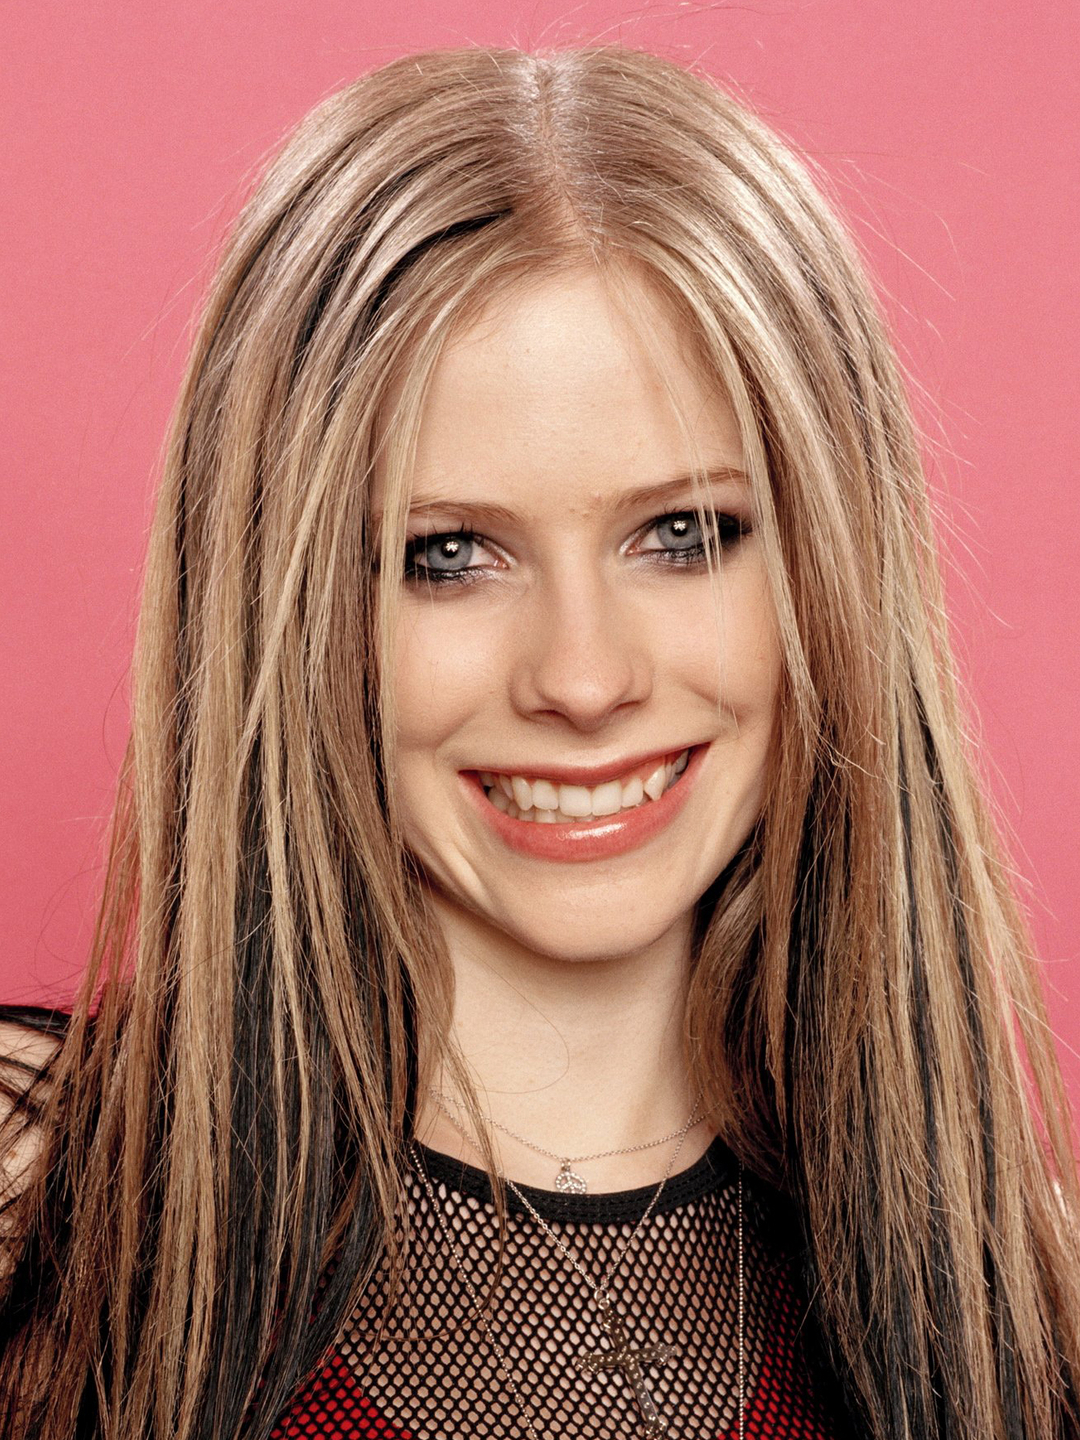 Avril Lavigne young pics